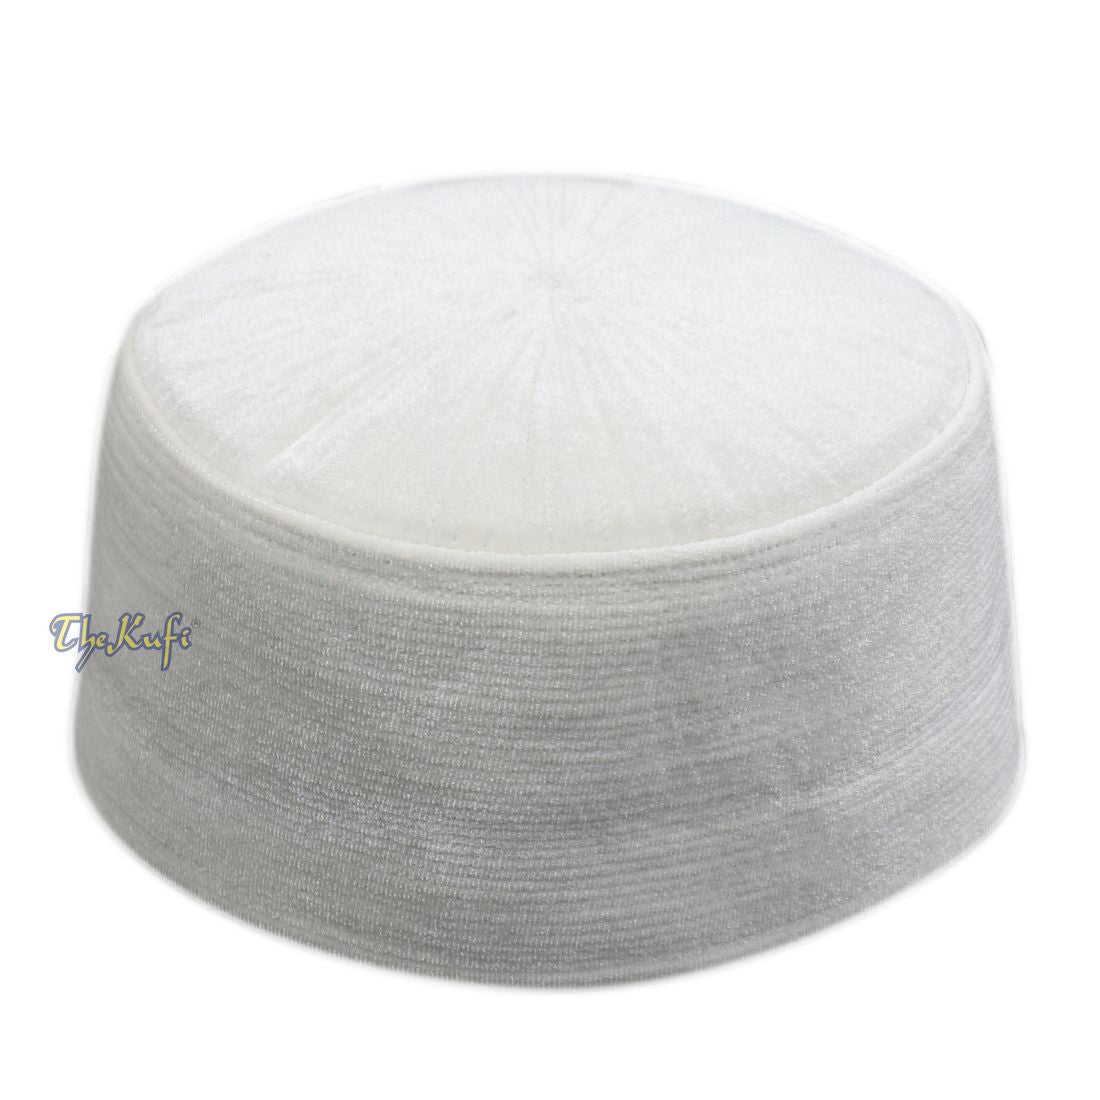 White Velvet Kufi Hat – High Quality Handmade Rigid Islamic Kufi Cap Turkish Chechen Style Prayer Cap